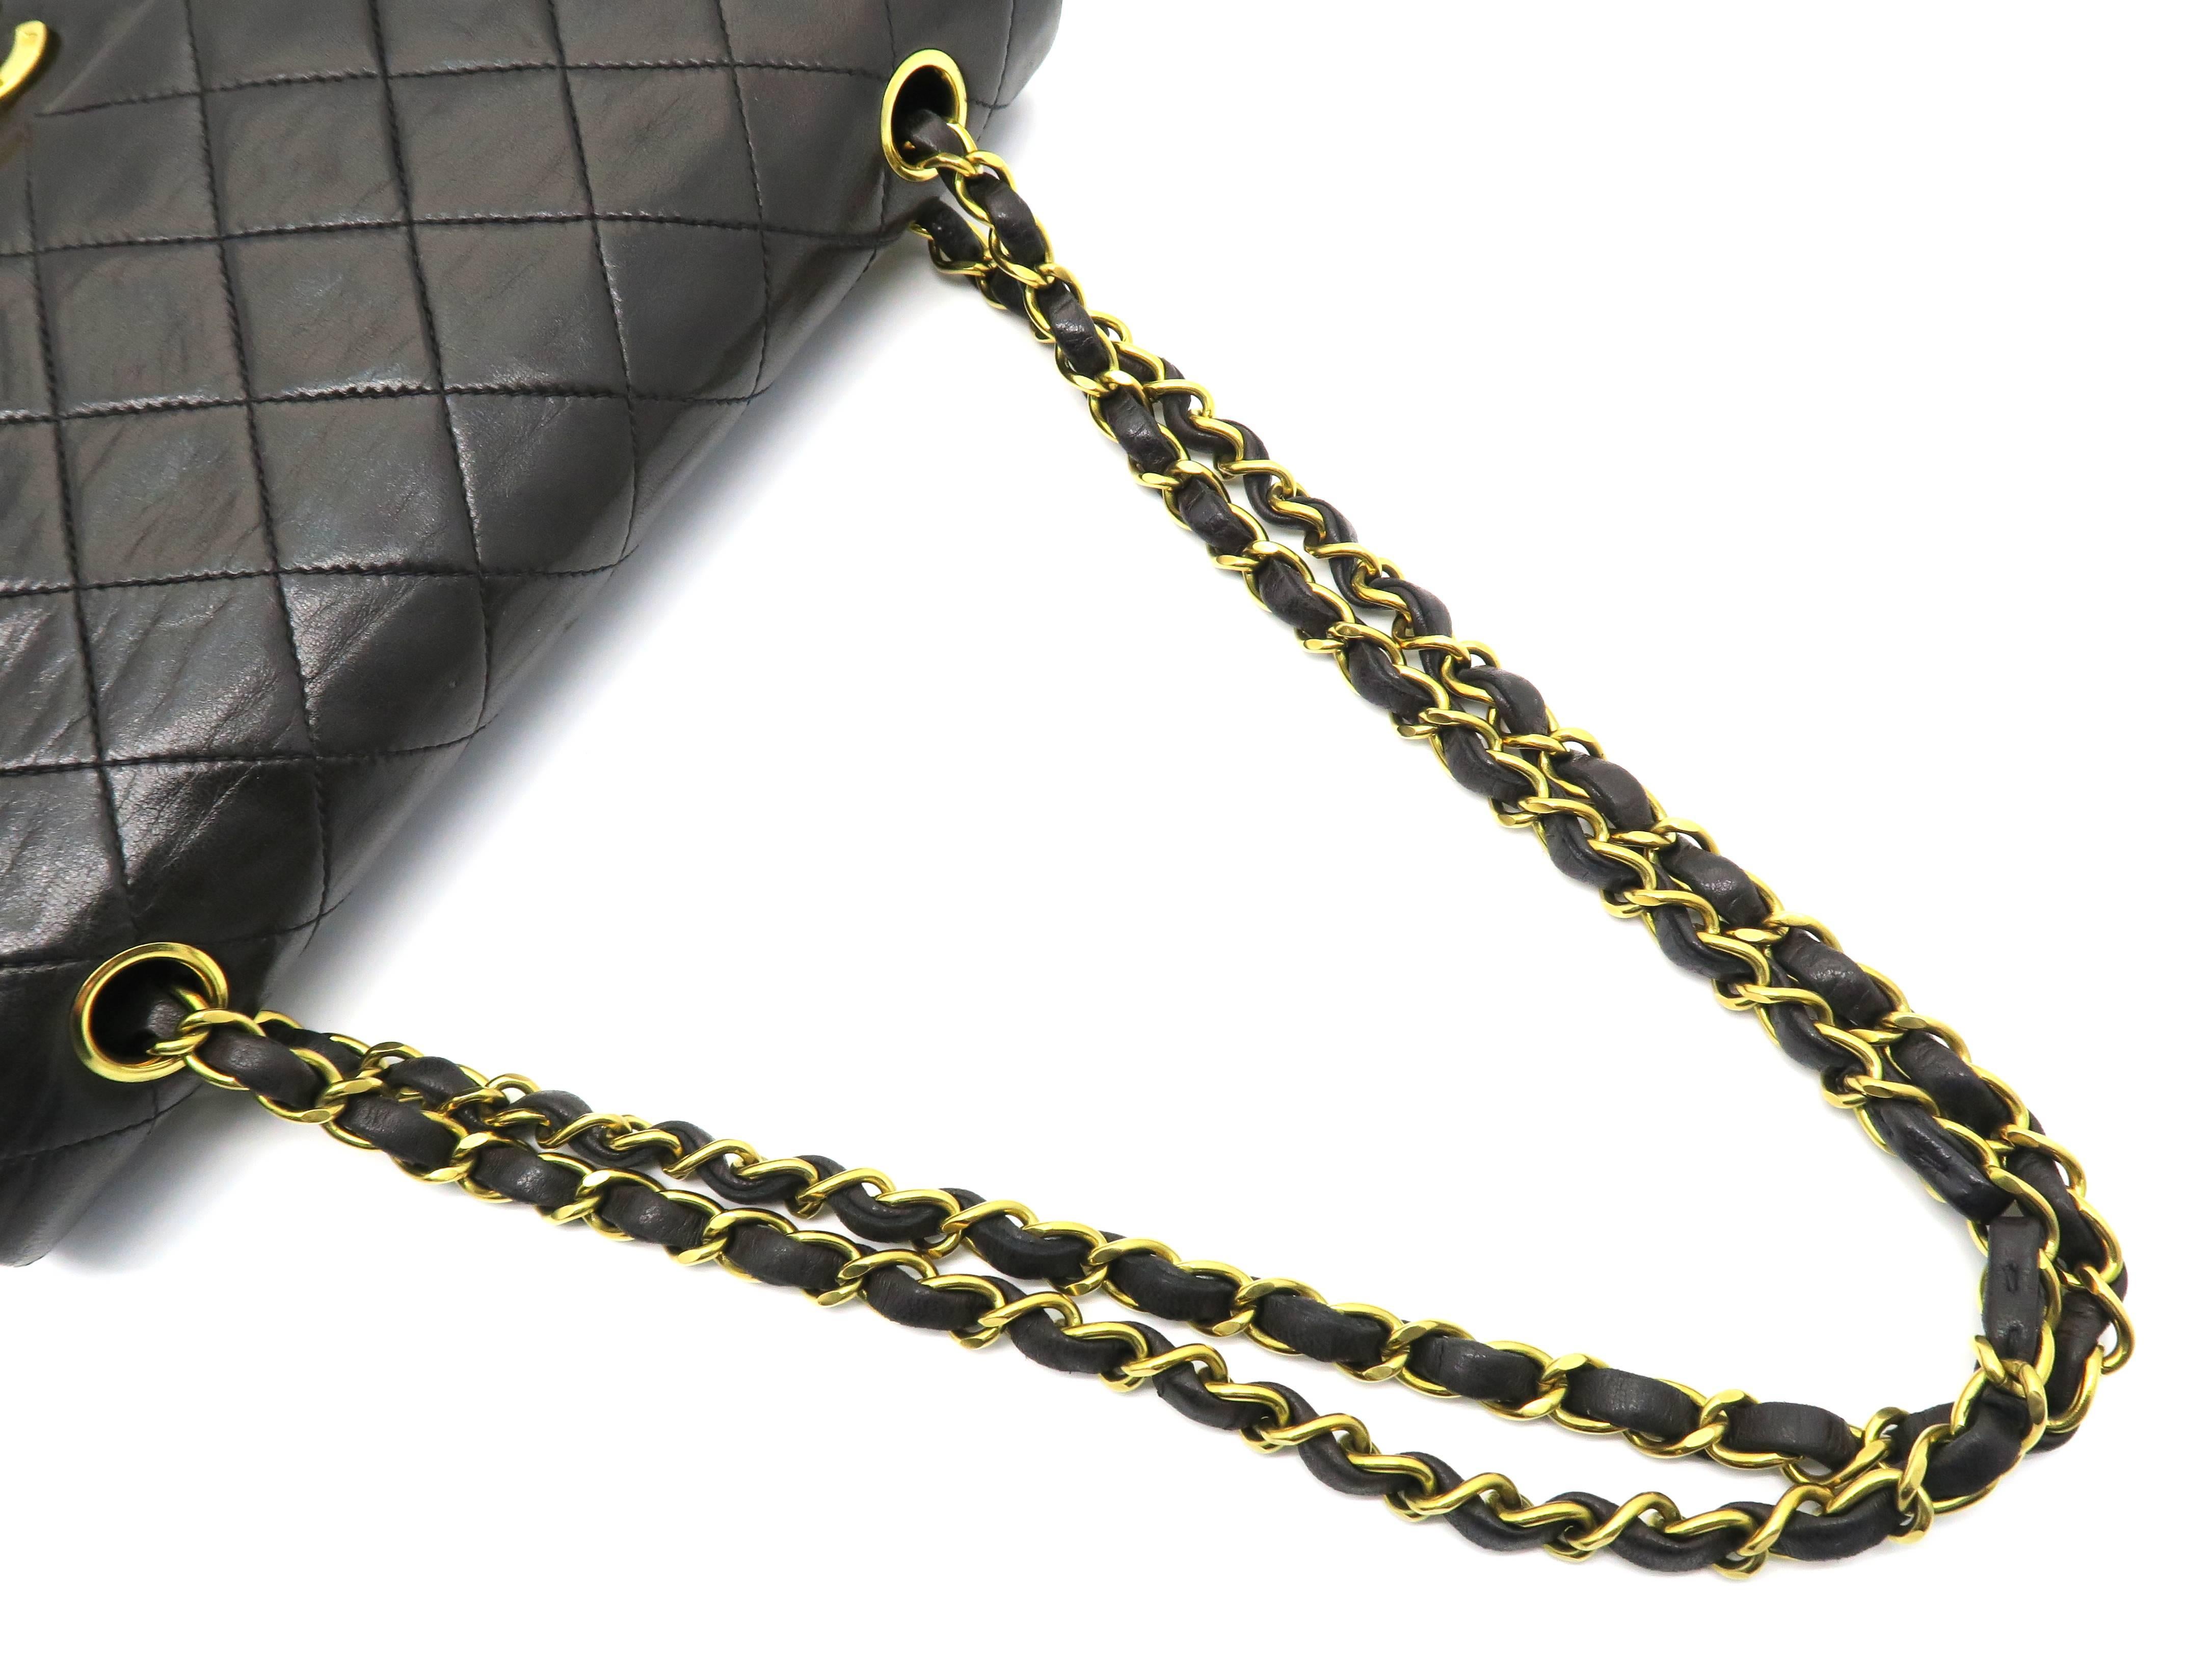 Women's Chanel Vintage Matelasse 25 Double Flap Black Leather Chain Shoulder Bag For Sale